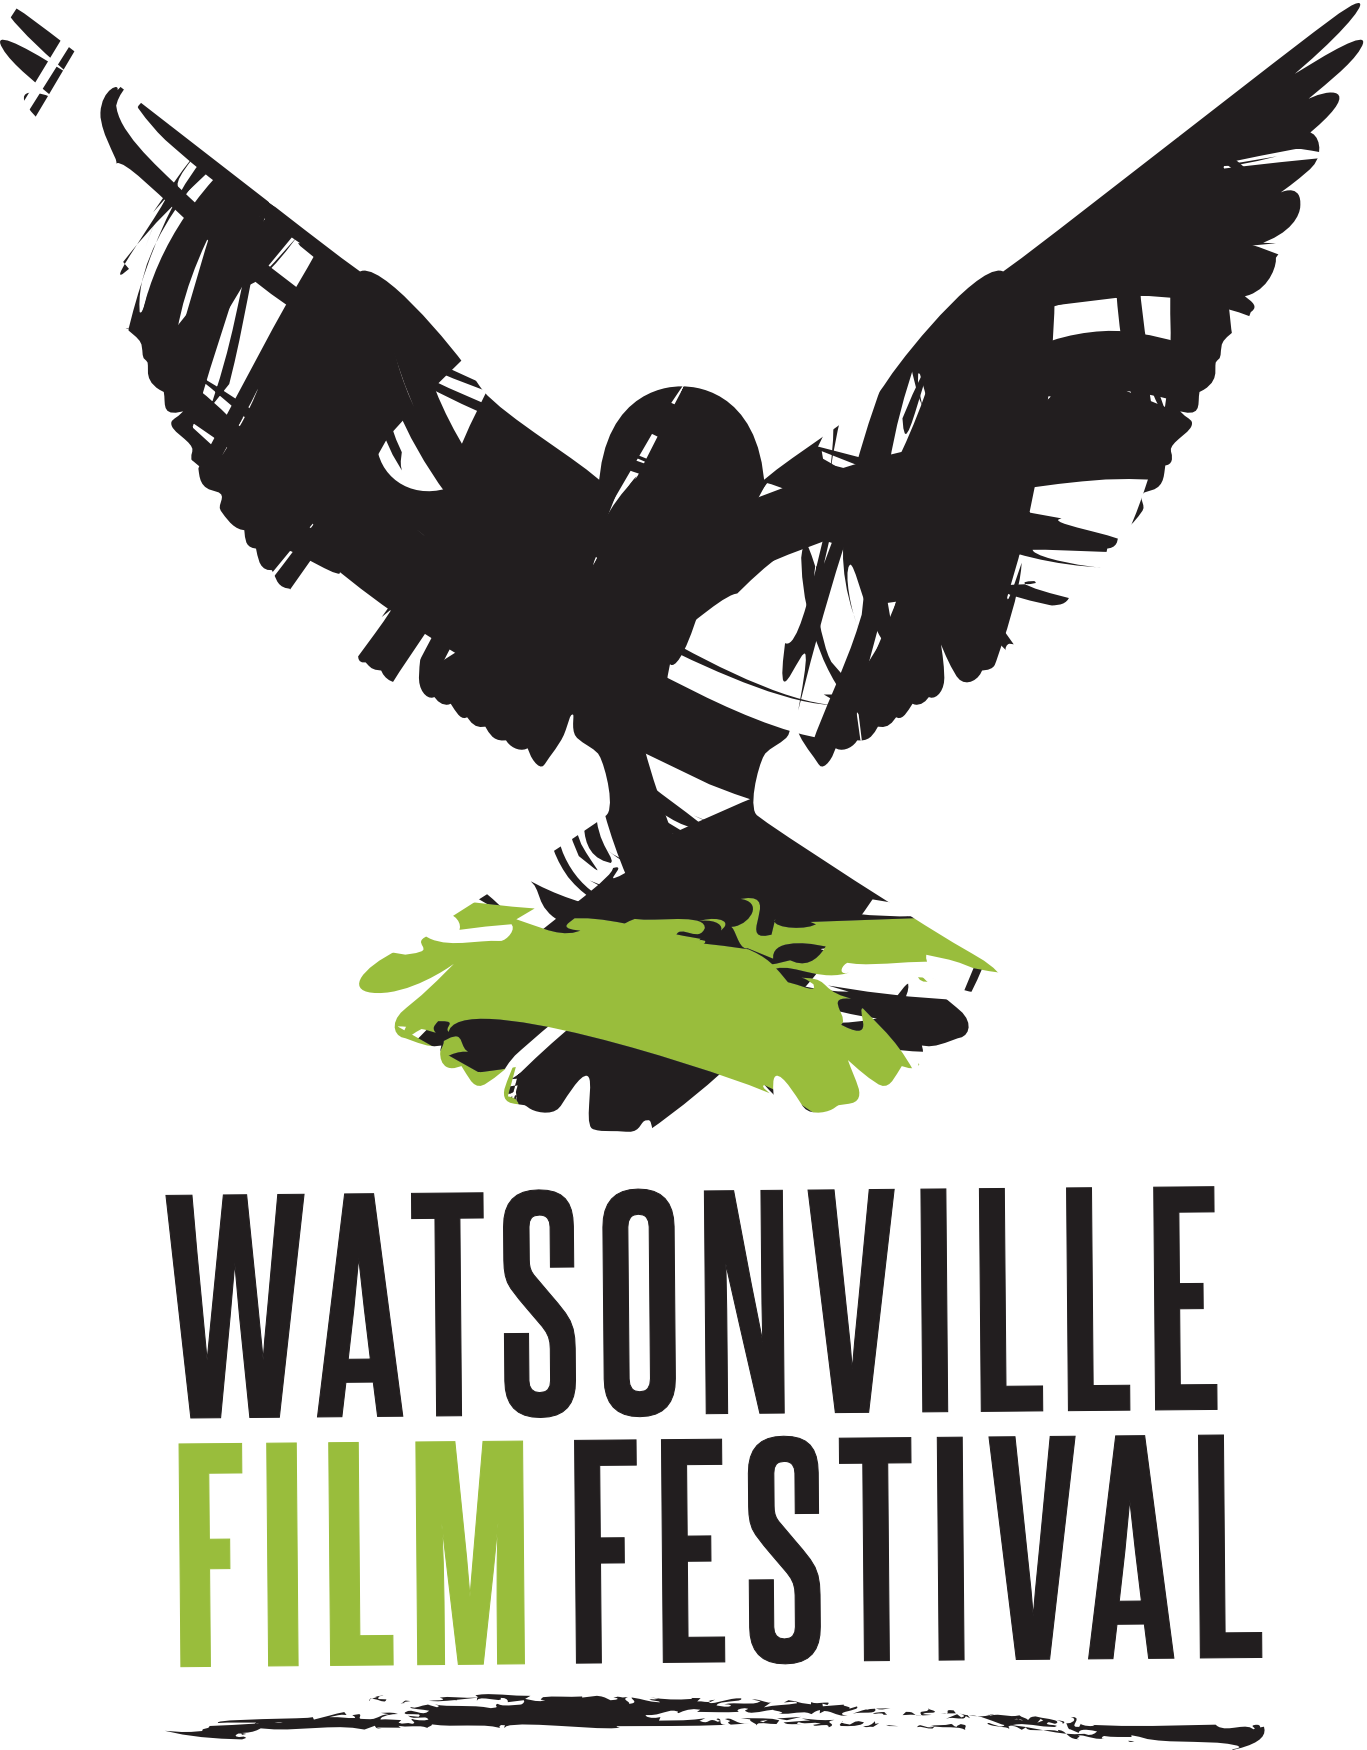 Watsonville Film Festival 2021